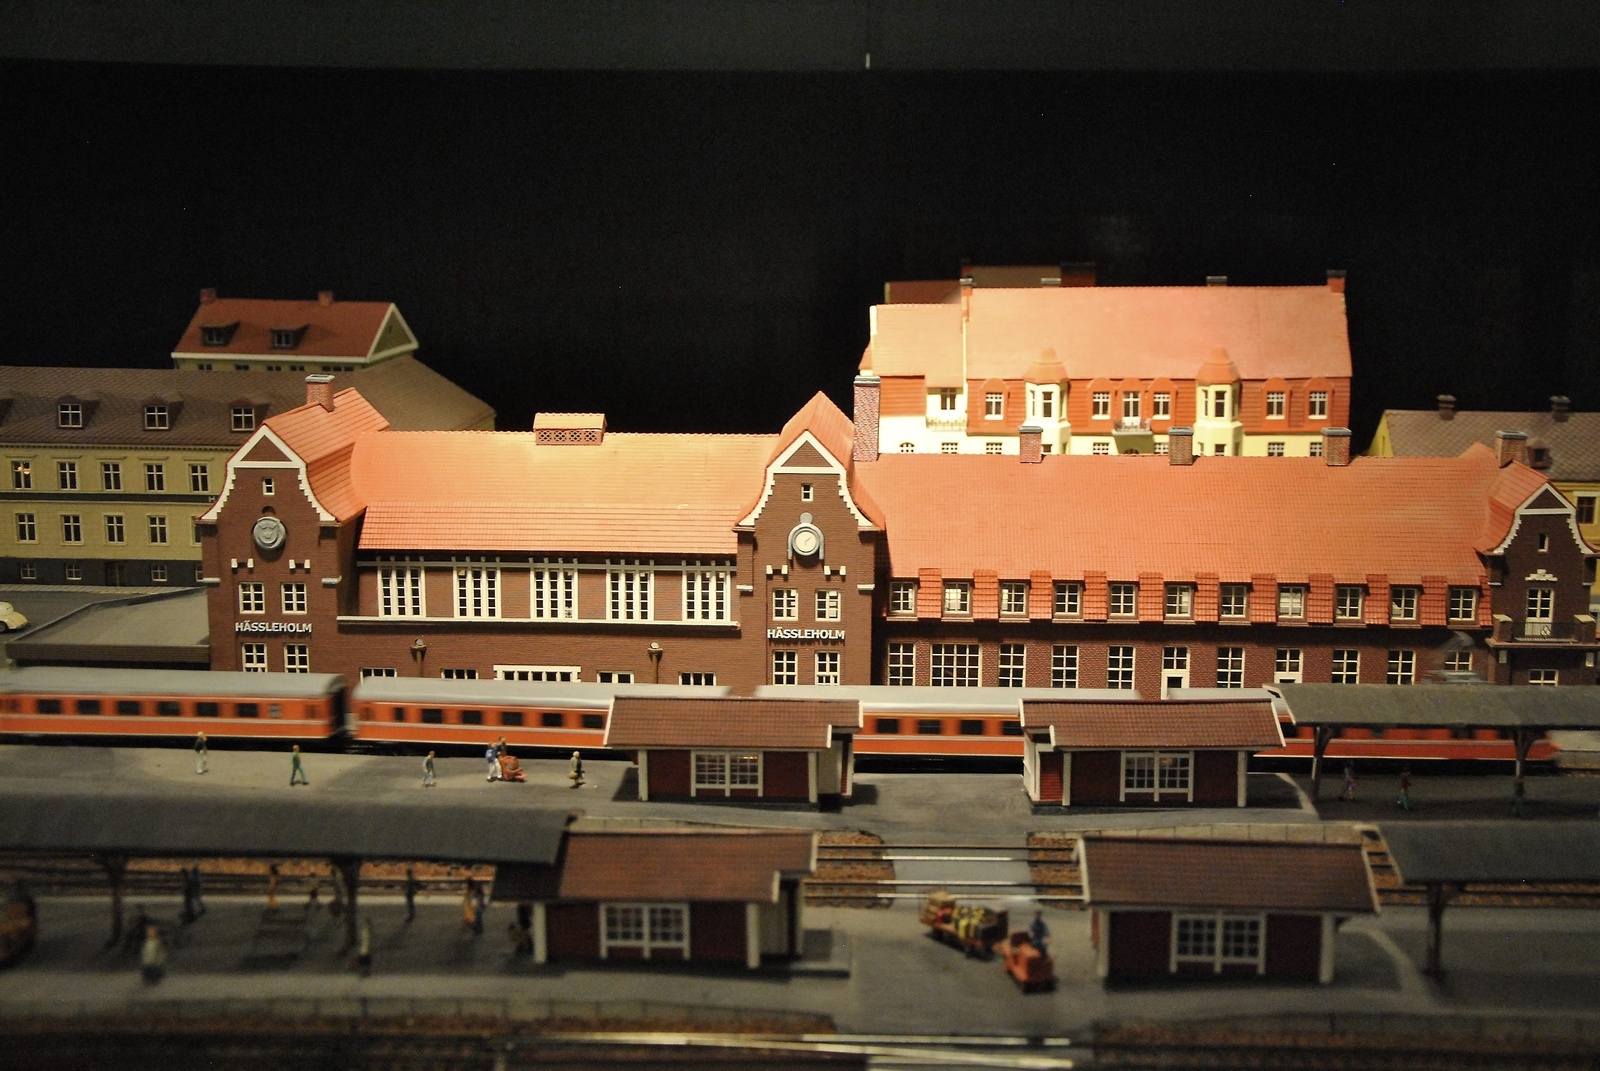 Hässleholms stationshus och bangård är ett av de större inslagen i järnvägsmodellen.